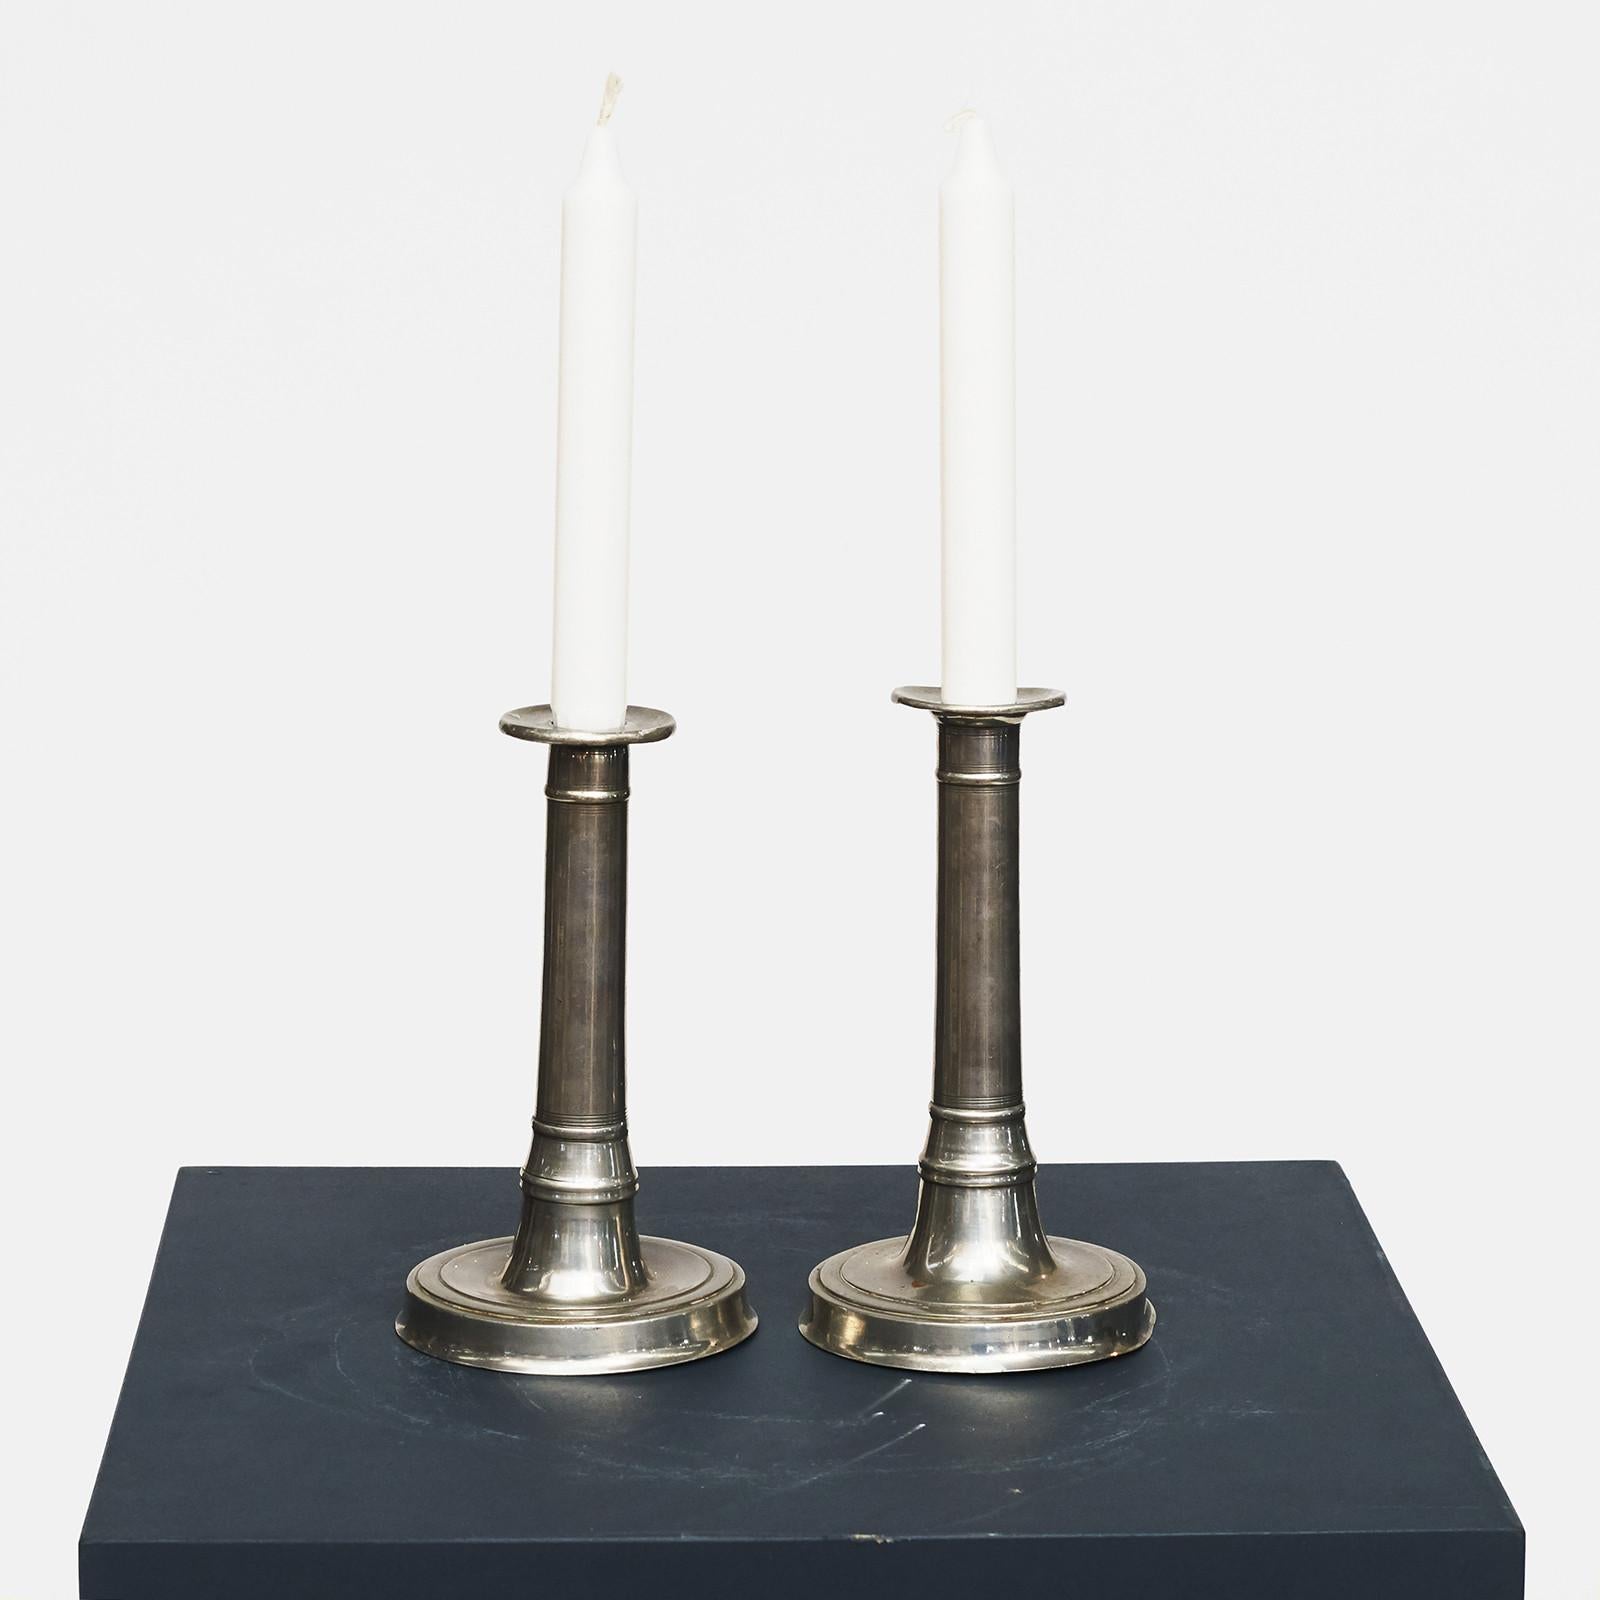 Paar Louis-XVI-Kerzenleuchter aus Zinn, datiert 1795.
Abnehmbare leichte Manschetten. Gestützt auf große runde Sockel.

Zustand: Es gibt leichte Gebrauchsspuren, leichte Oberflächenkratzer und leichte Dellen vom Gebrauch im Laufe des Jahres. Eine